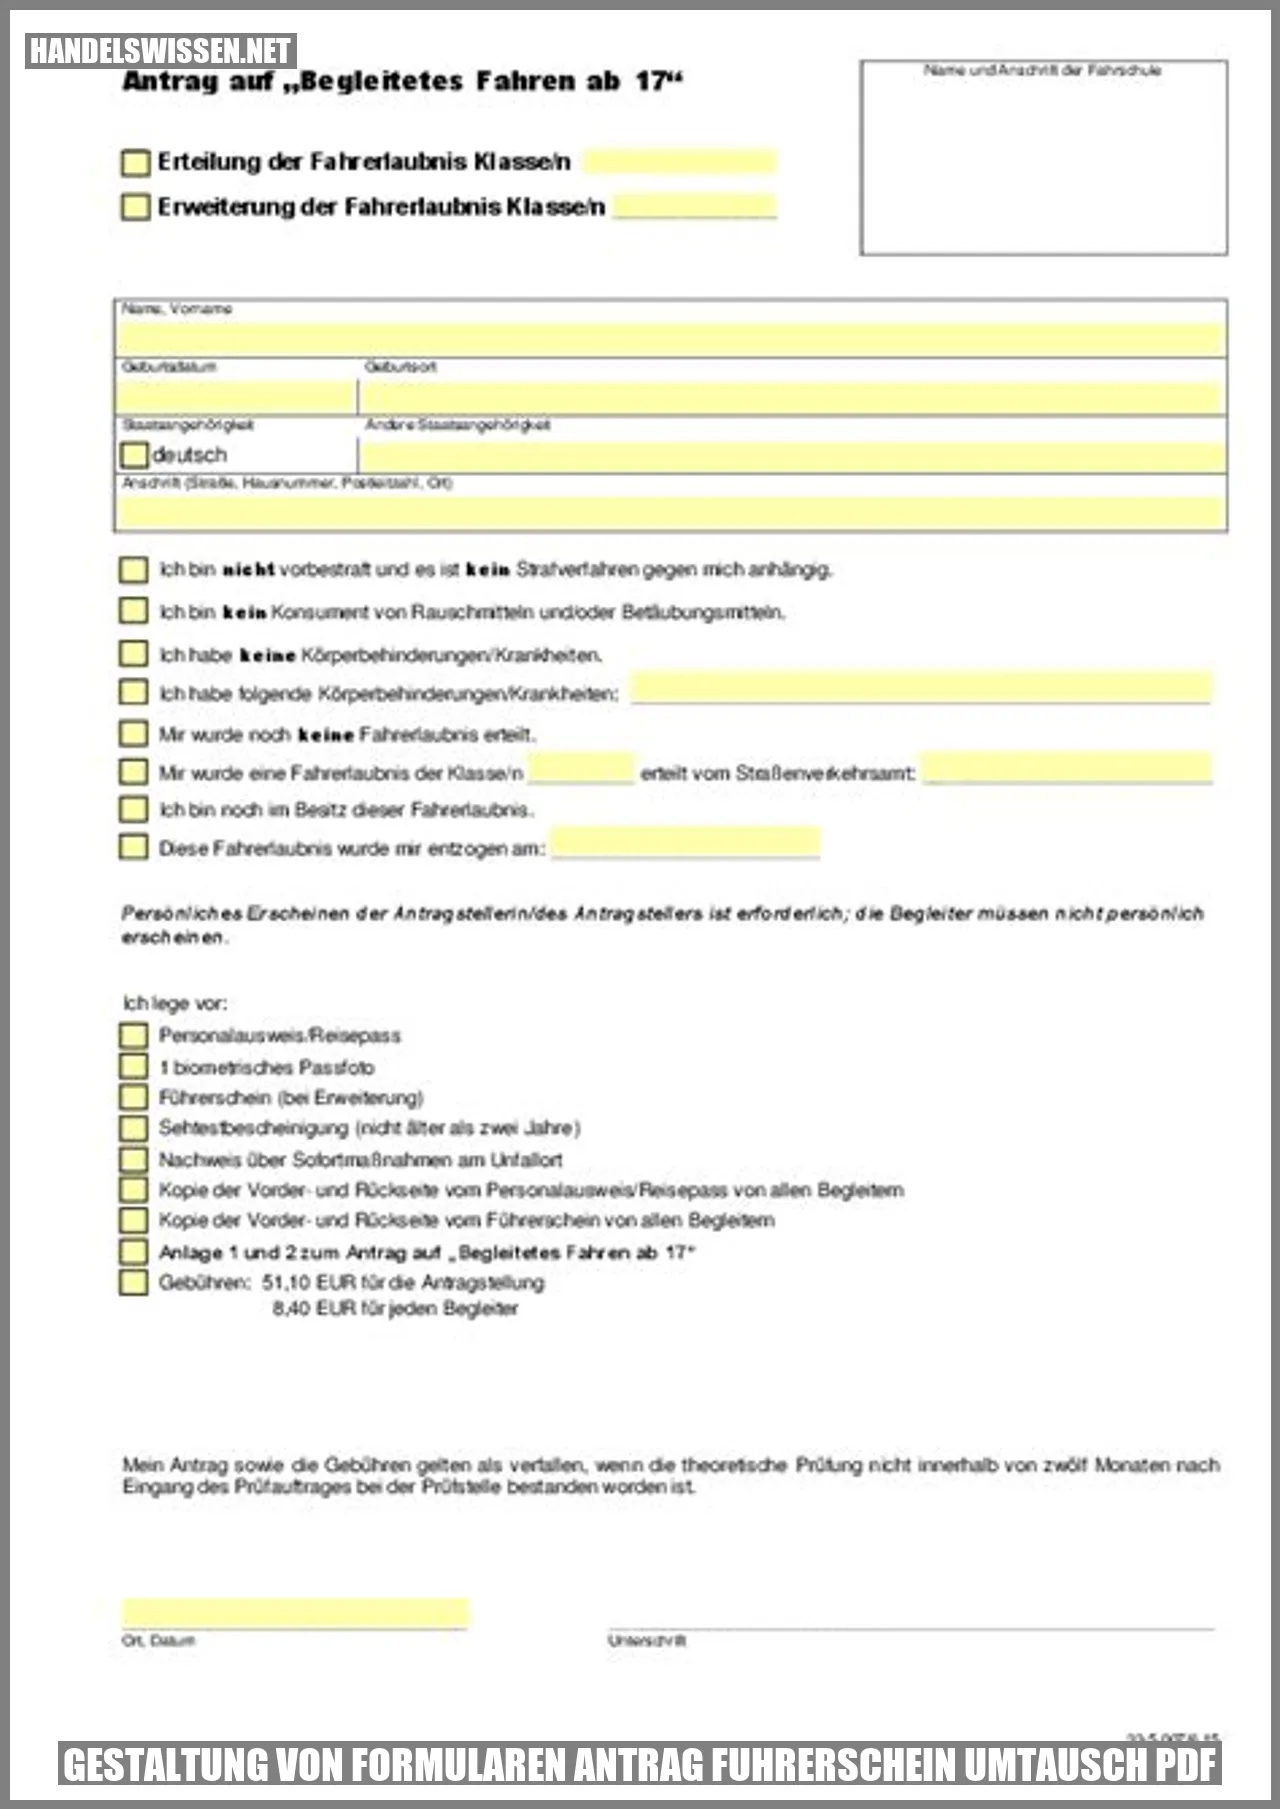 Gestaltung von Formularen antrag fuhrerschein umtausch pdf